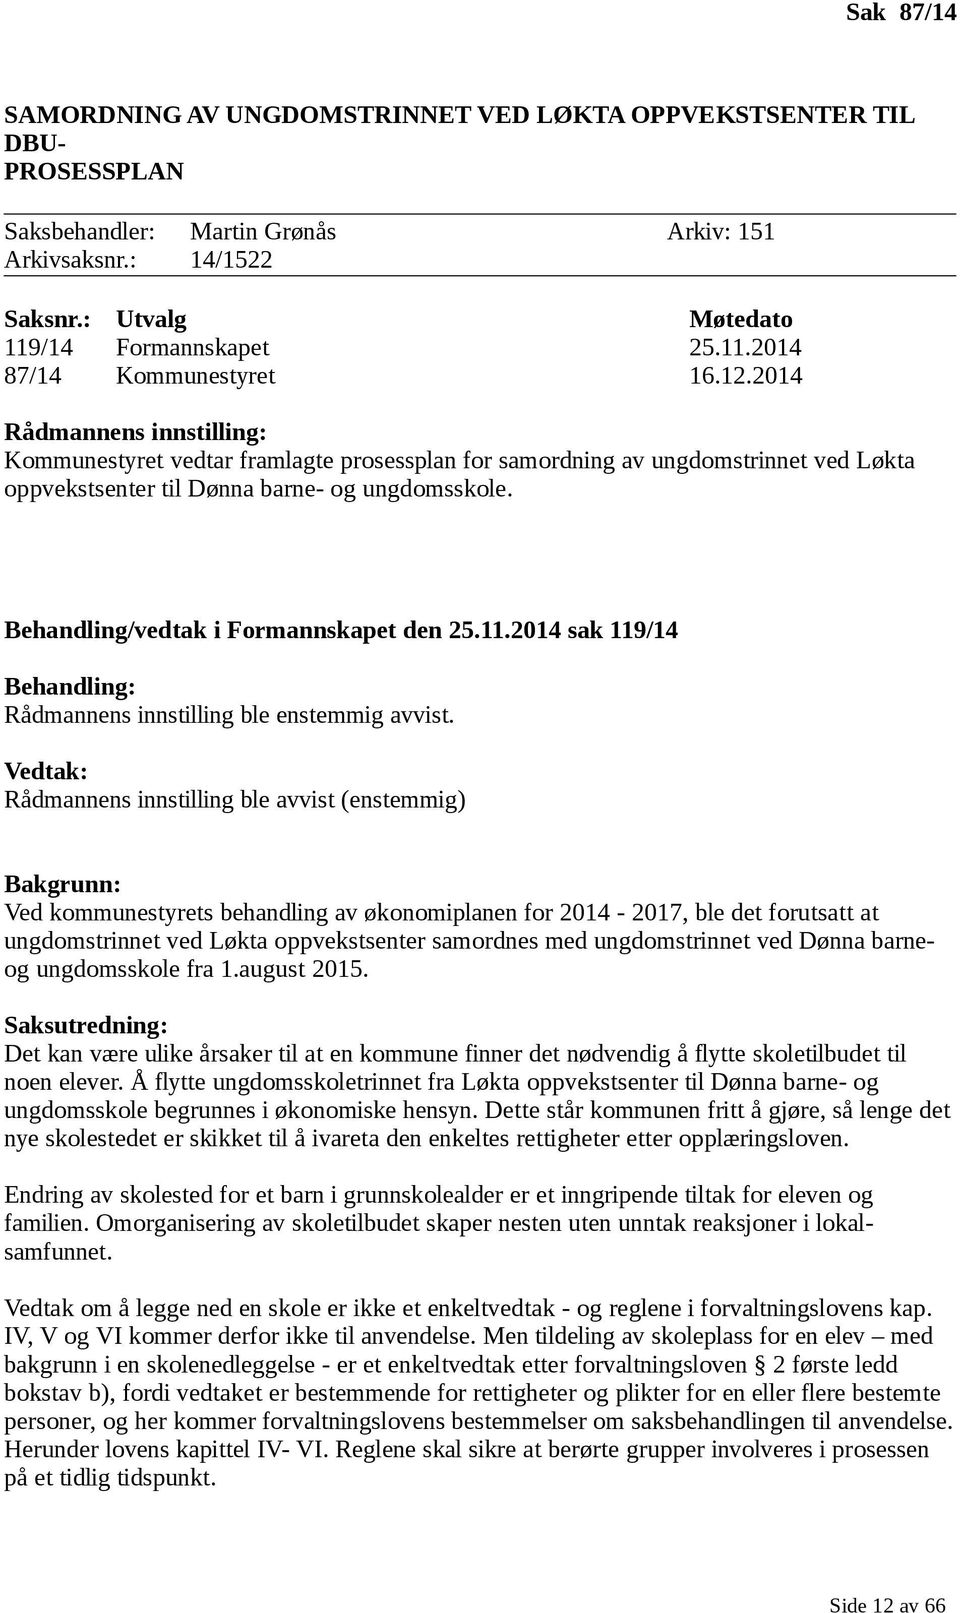 2014 Rådmannens innstilling: Kommunestyret vedtar framlagte prosessplan for samordning av ungdomstrinnet ved Løkta oppvekstsenter til Dønna barne- og ungdomsskole.